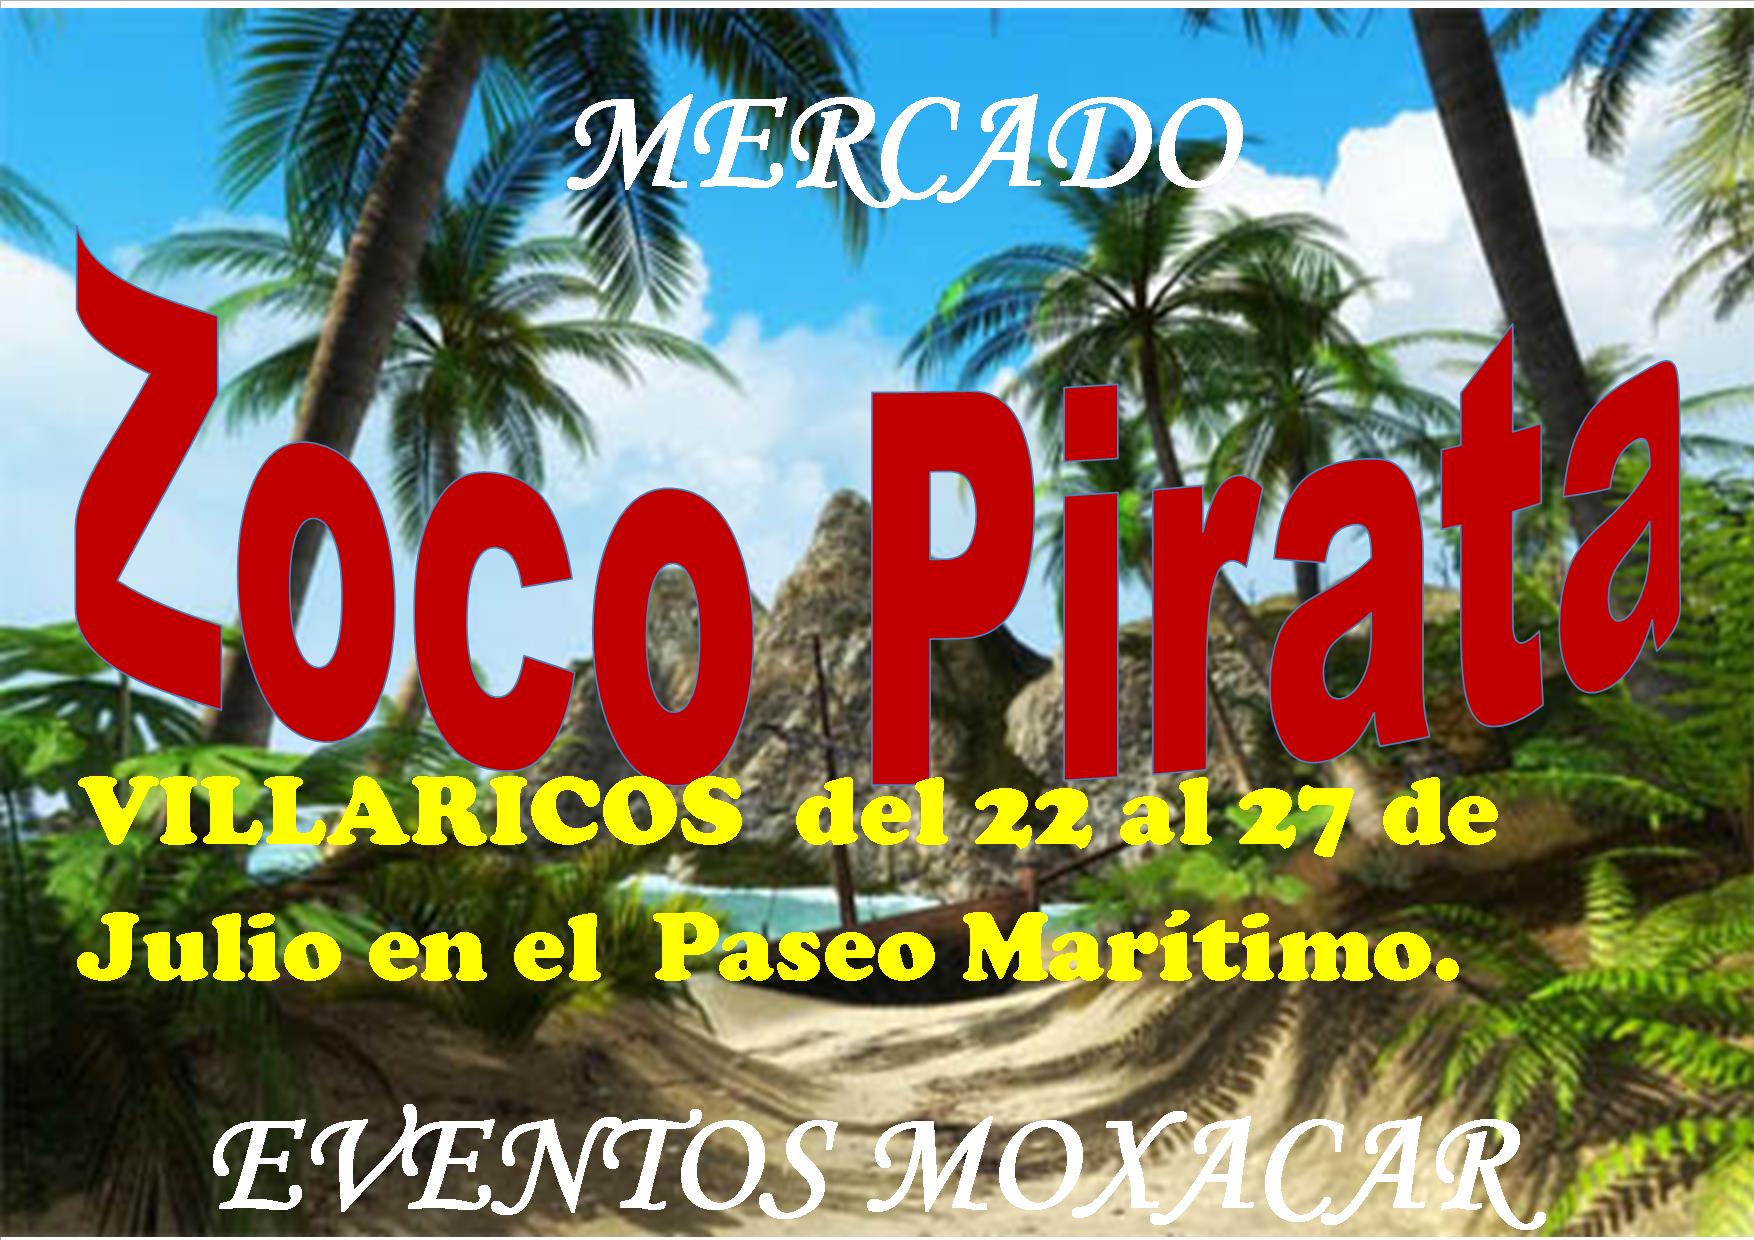 22 al 27 de Julio – Zoco pirata en Villaricos, ALmeria por Eventos Moxacar